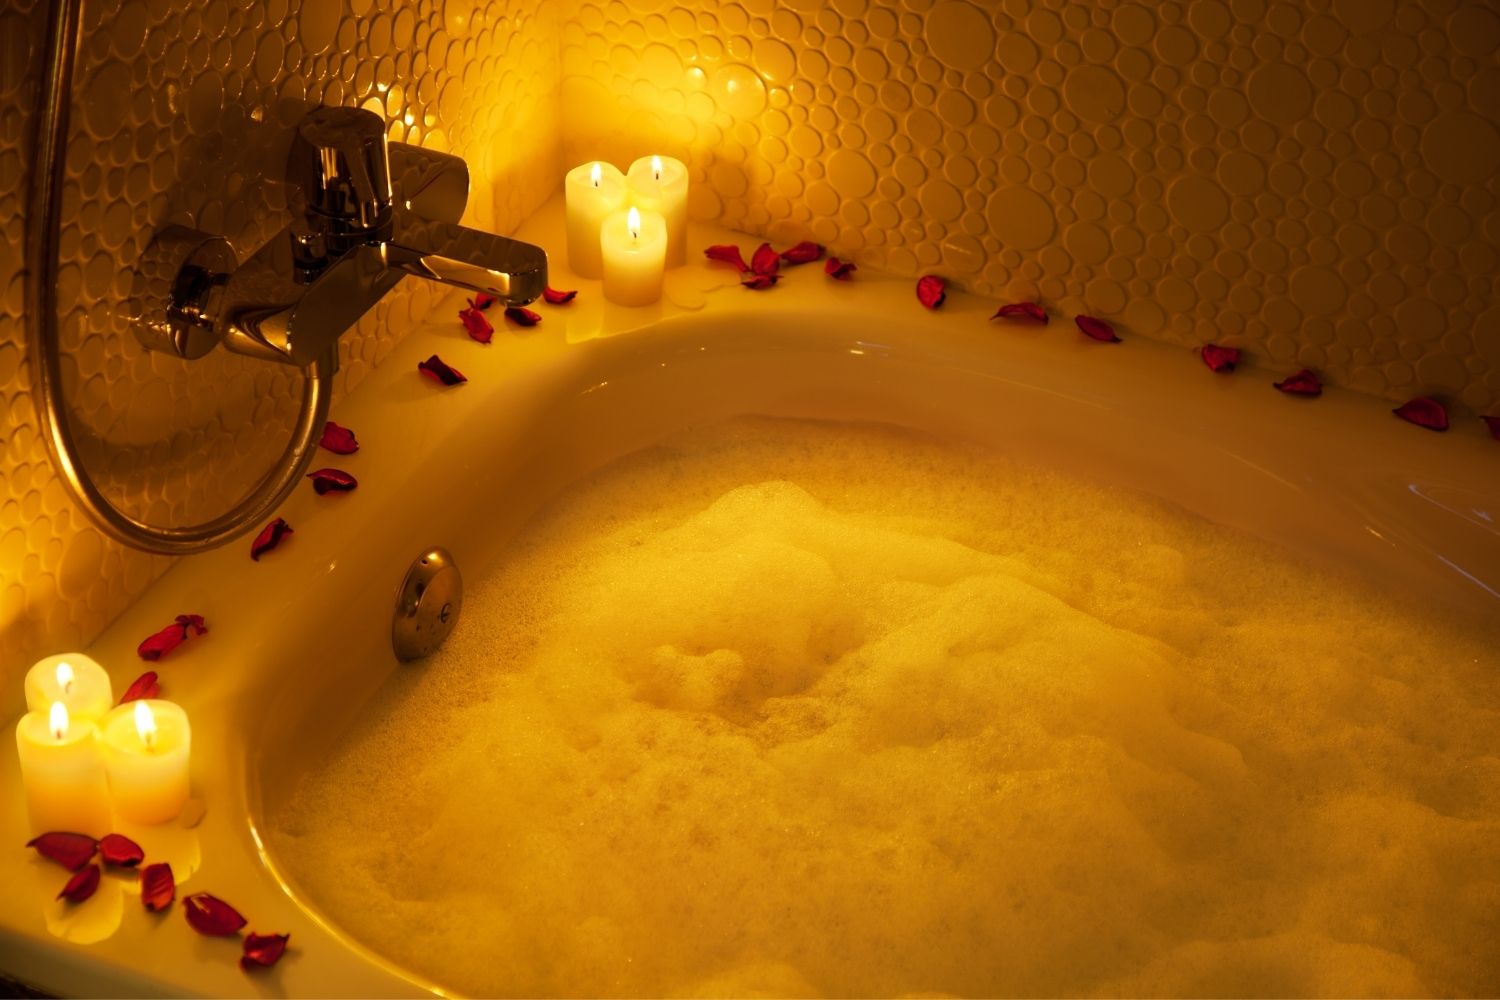 Lijkenhuis verder Tranen RDS Droombadkamer: uw luxe badkamer volledig naar wens | Een romantische  badkamer voor Valentijn